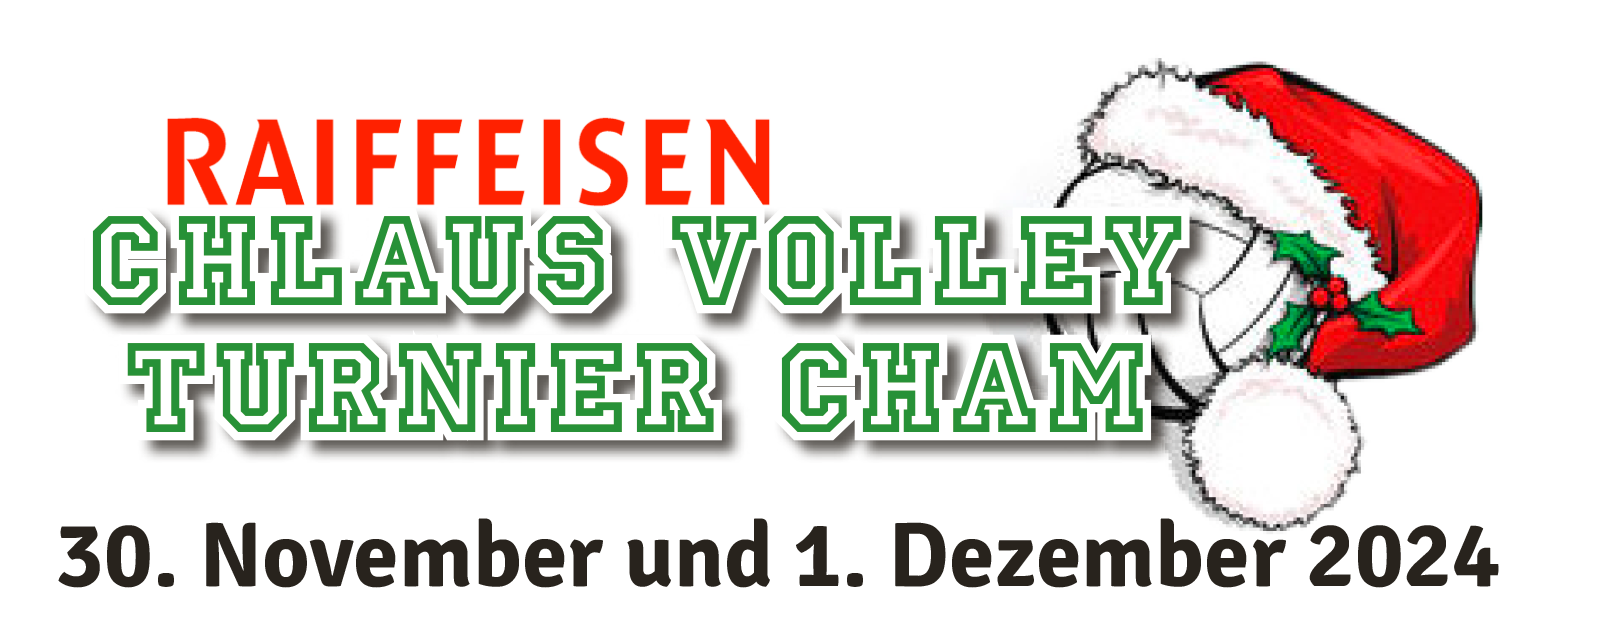 Chlaus-Volleyballturnier Cham TV Cham | Volleyball Turnier Cham | Volleyball Turnier Zug | Volleyball Turnier Innerschweiz